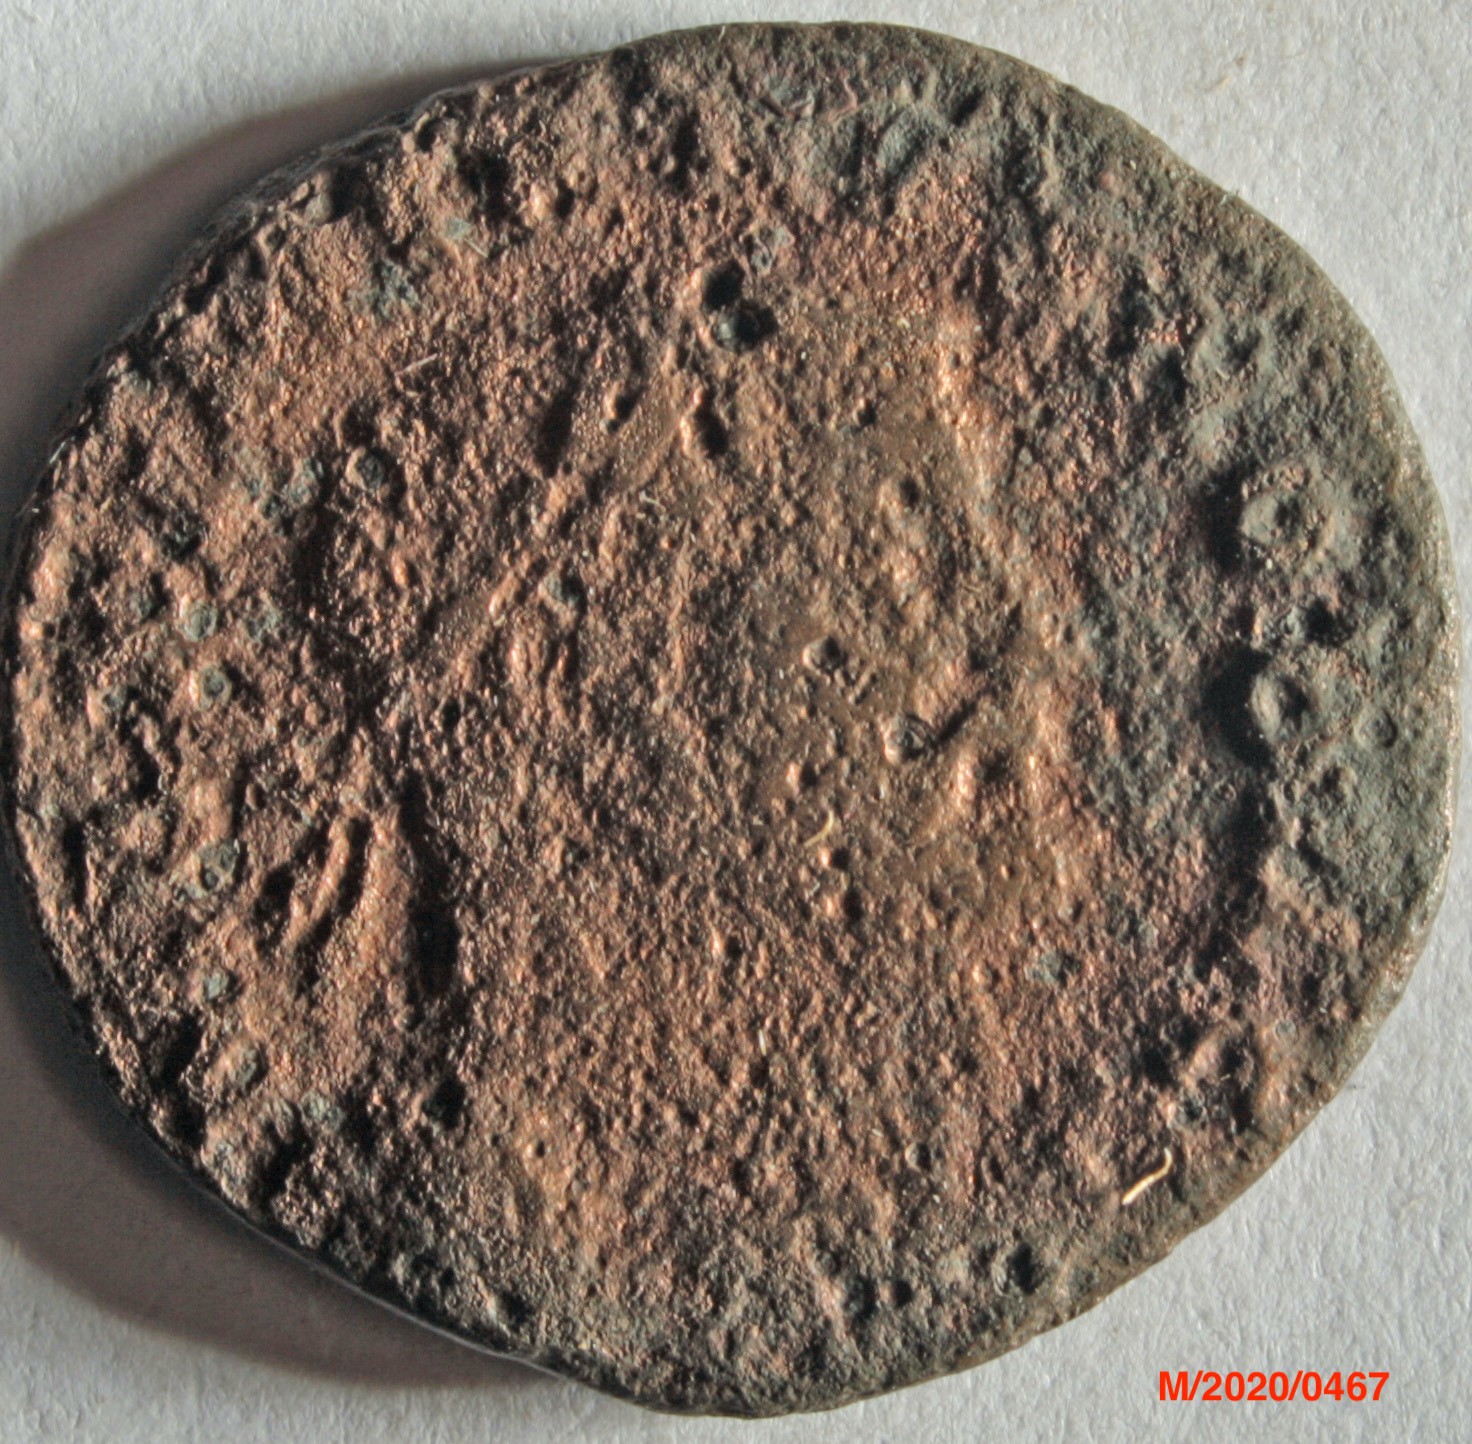 Römische Münze, Nominal Follis, Prägeherr unbekannt, Prägeort Trier, Original (Museumsgesellschaft Bad Dürkheim e.V. CC BY-NC-SA)